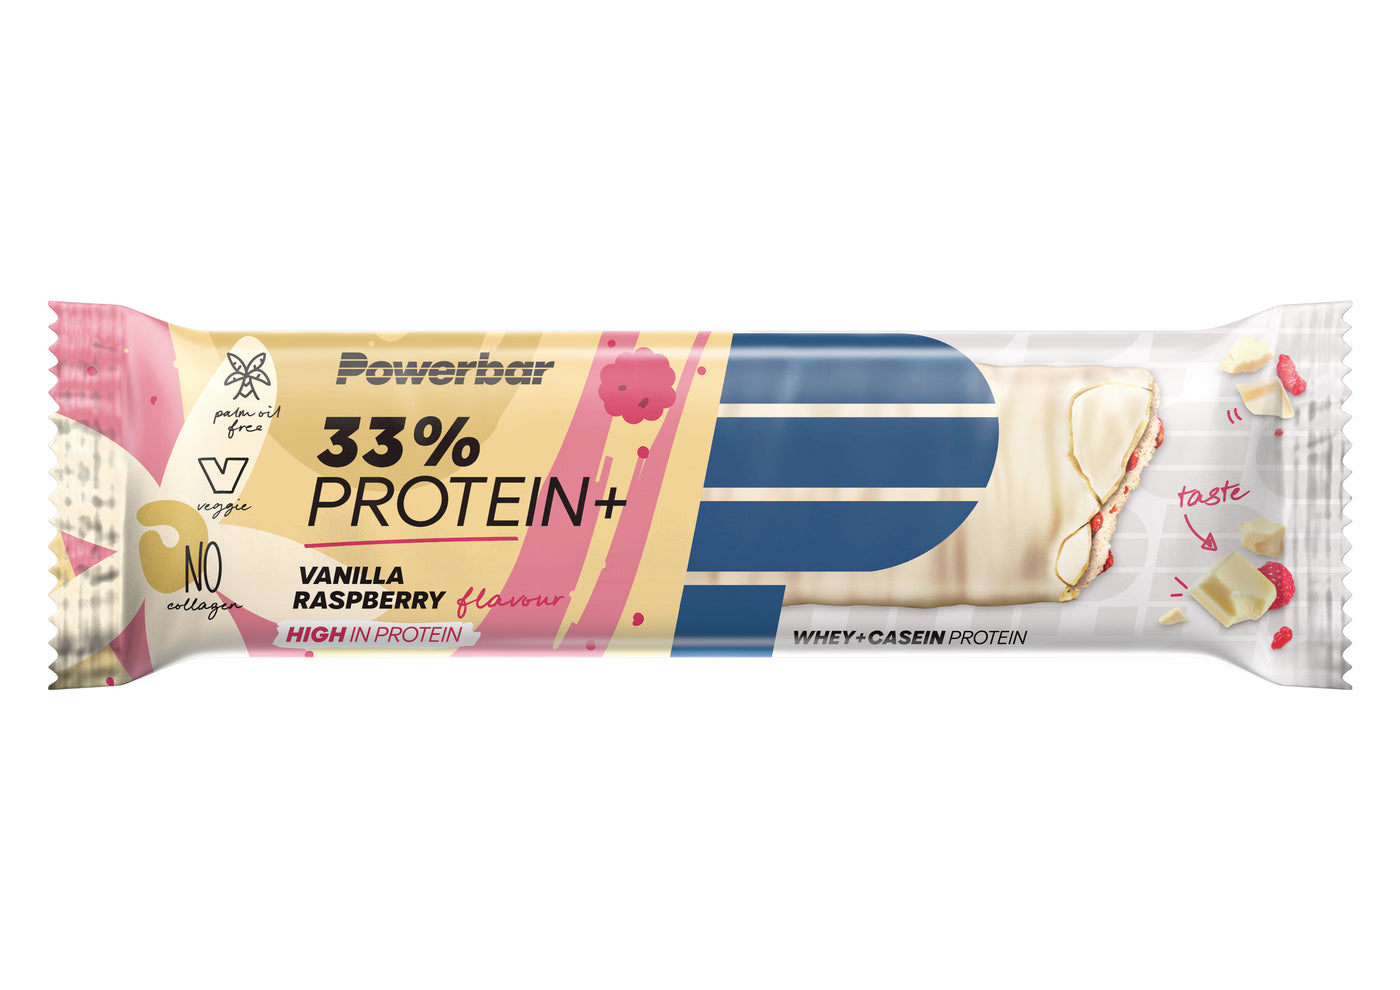 Protein bar 33% Protein+